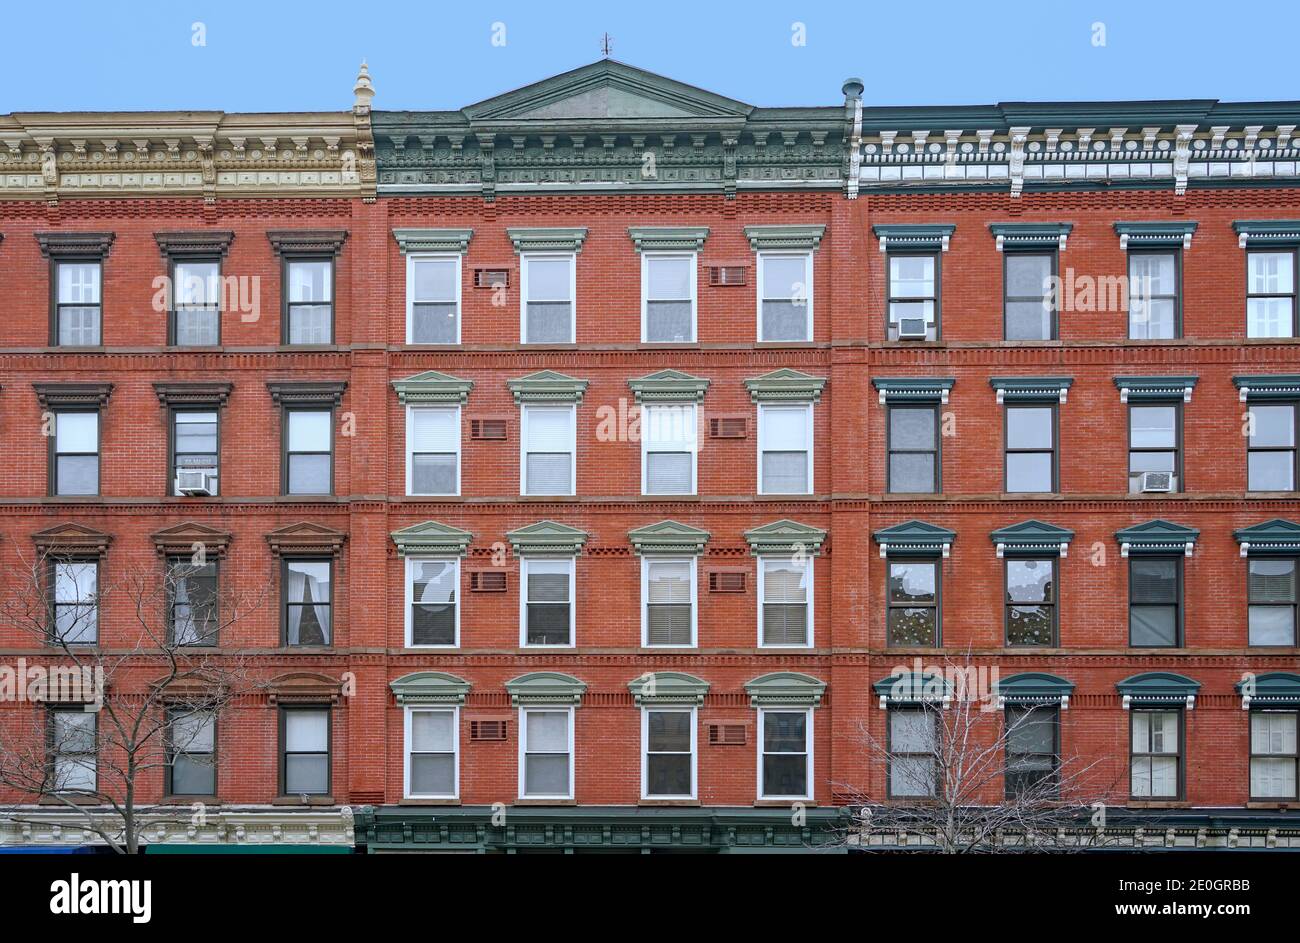 edificio de apartamentos de estilo antiguo con una fachada ornamentada en el techo Foto de stock